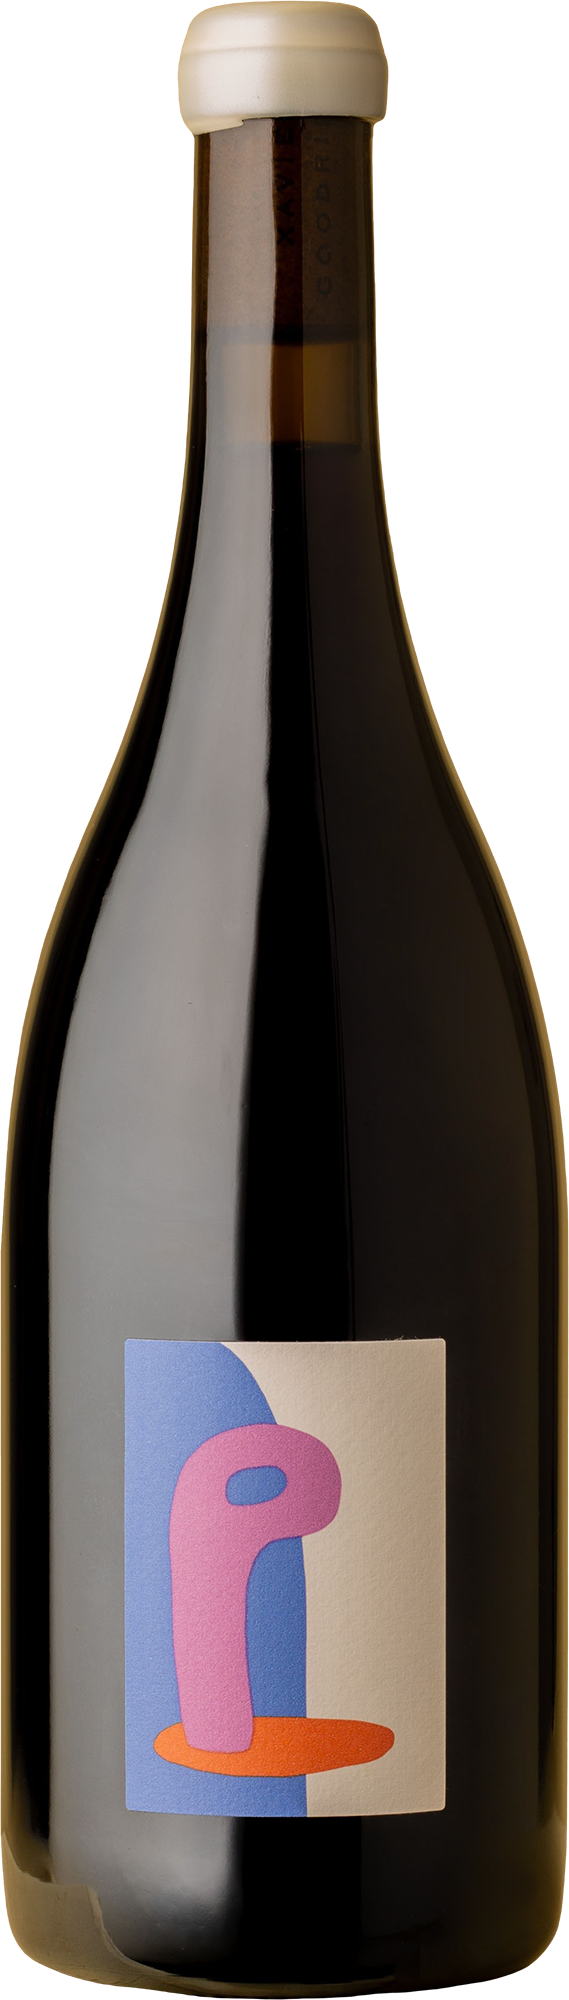 Xavier Goodridge - Maffra Pinot Noir 2021 Red Wine